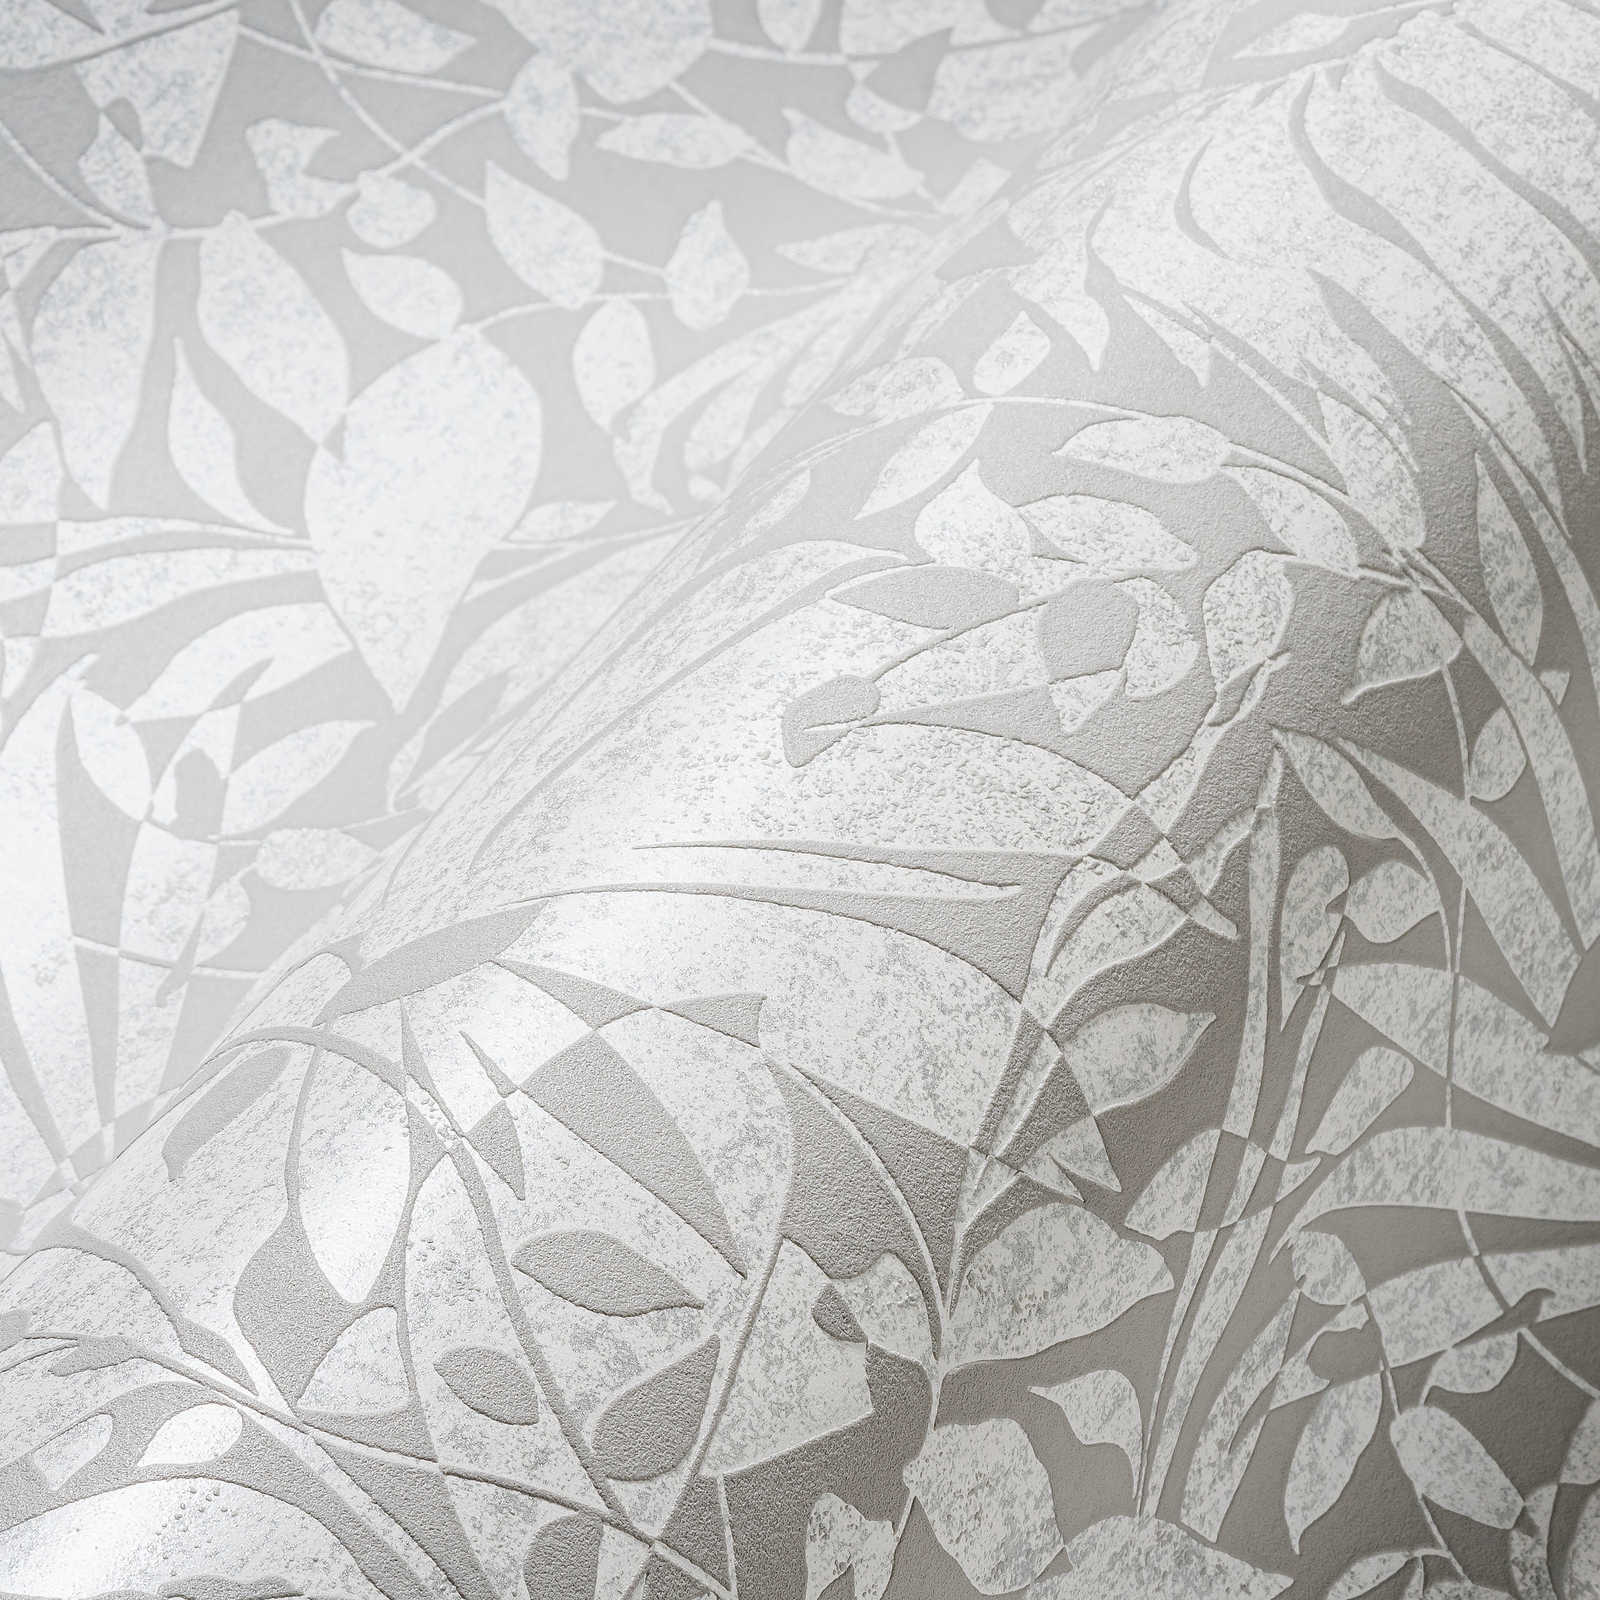             Papier peint gris à feuilles avec détails structurés et effet métallique
        